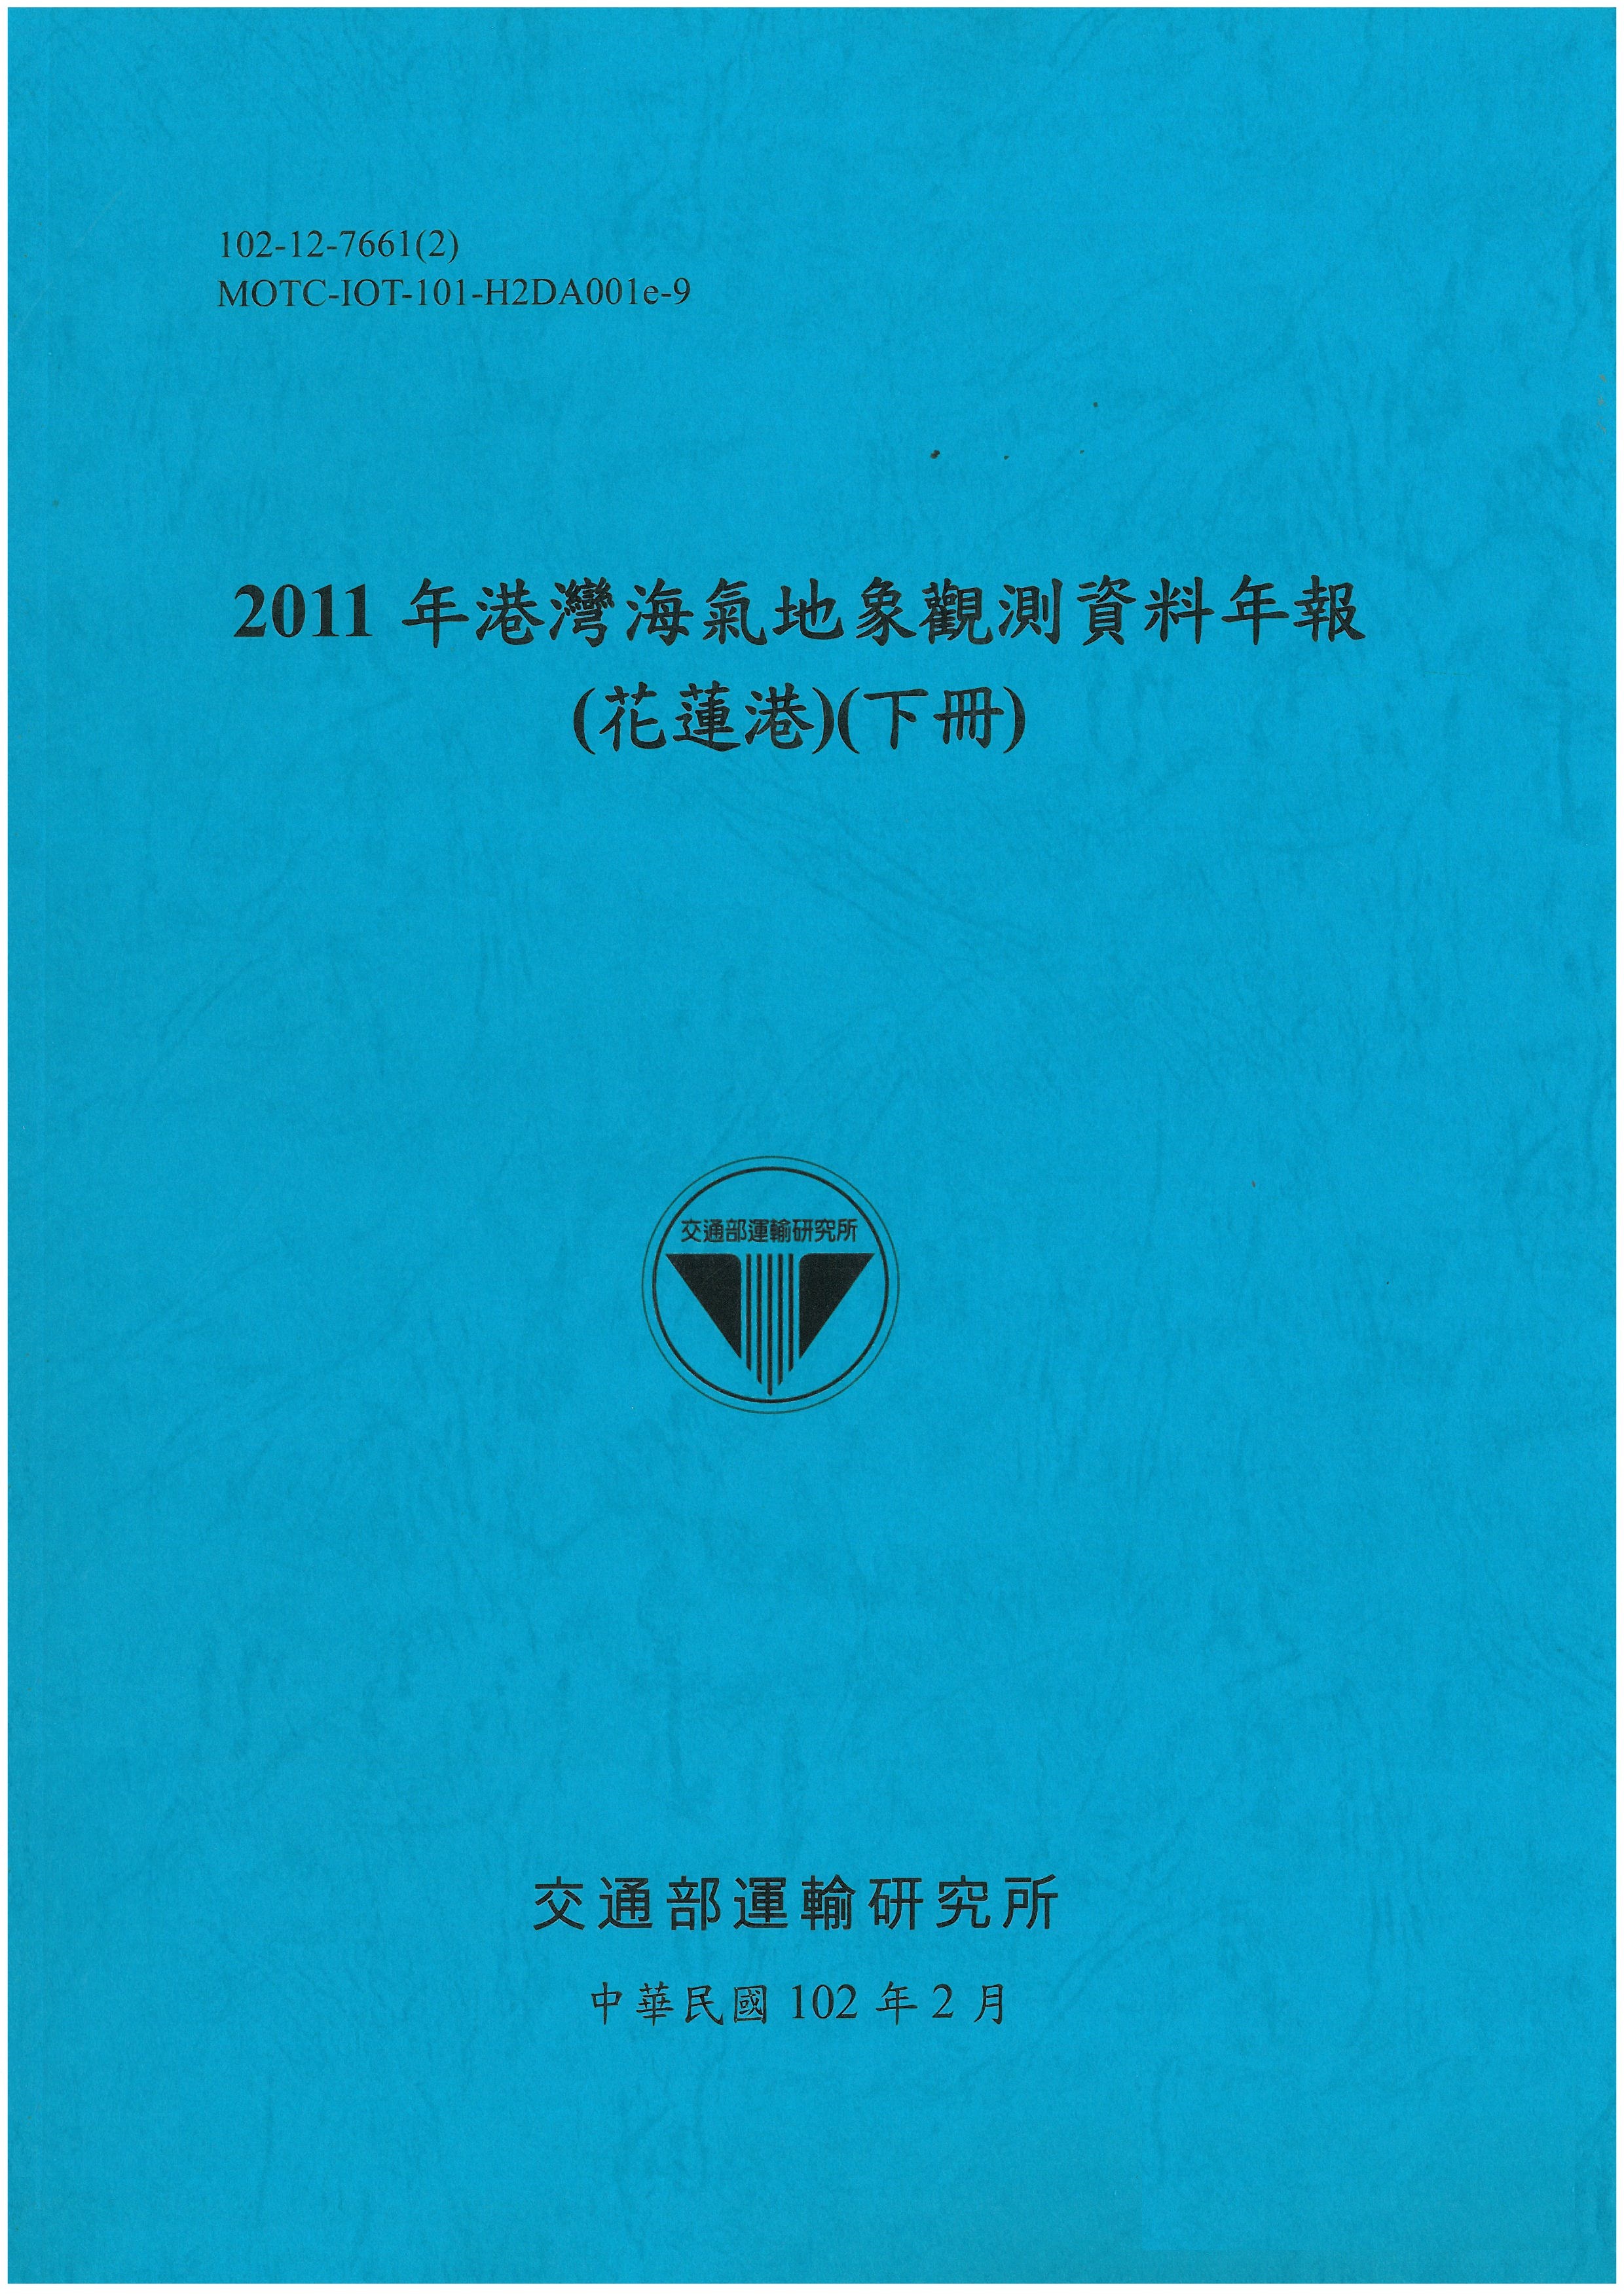 2011年港灣海氣地象觀測資料年報(花蓮港)(下冊)